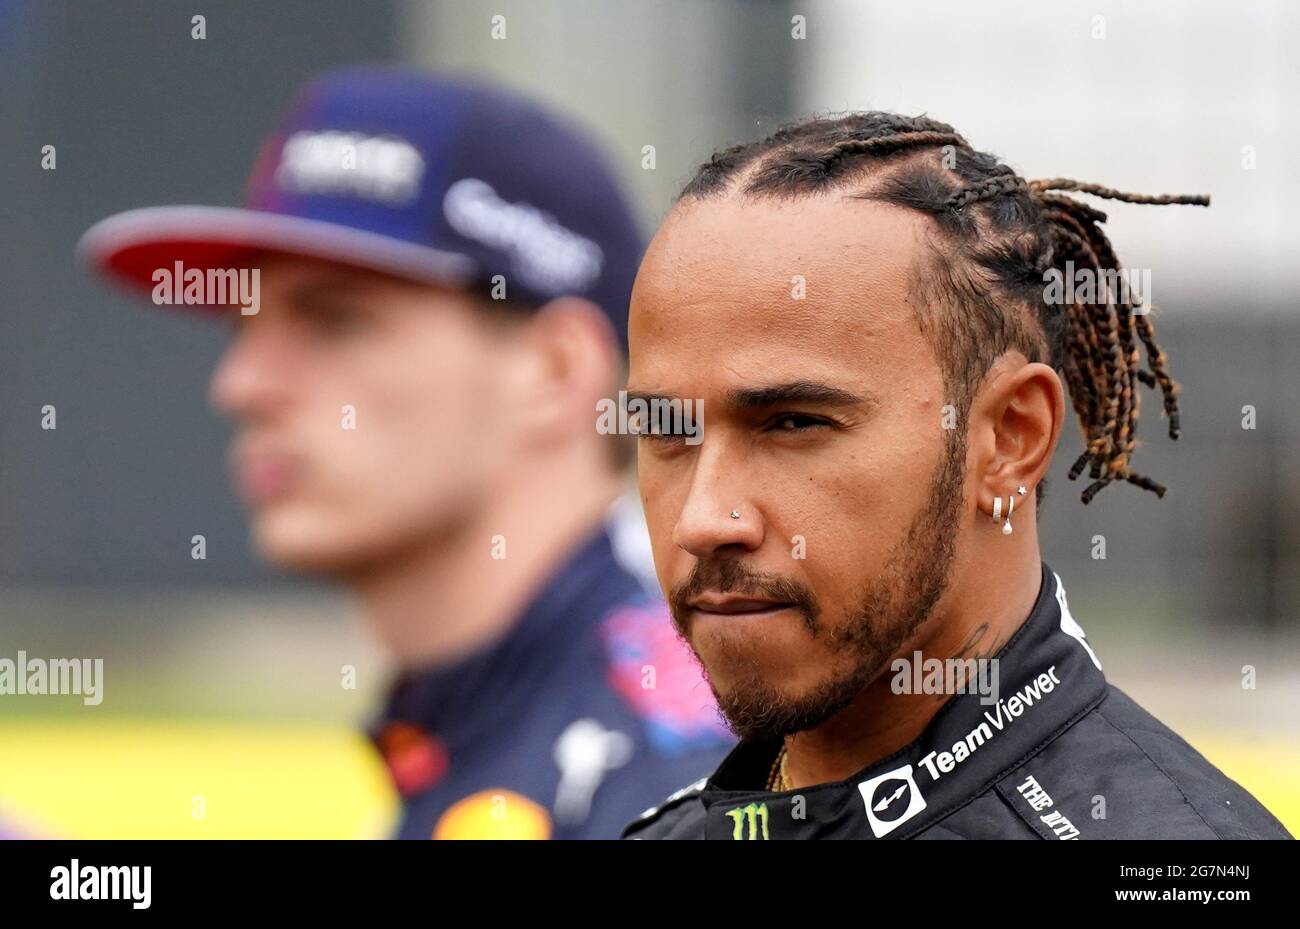 Lewis Hamilton, pilote de Mercedes, et Max Verstappen de Red Bull Racing, devant le Grand Prix britannique de Silverstone, à Towcester. Date de la photo : jeudi 15 juillet 2021. Banque D'Images